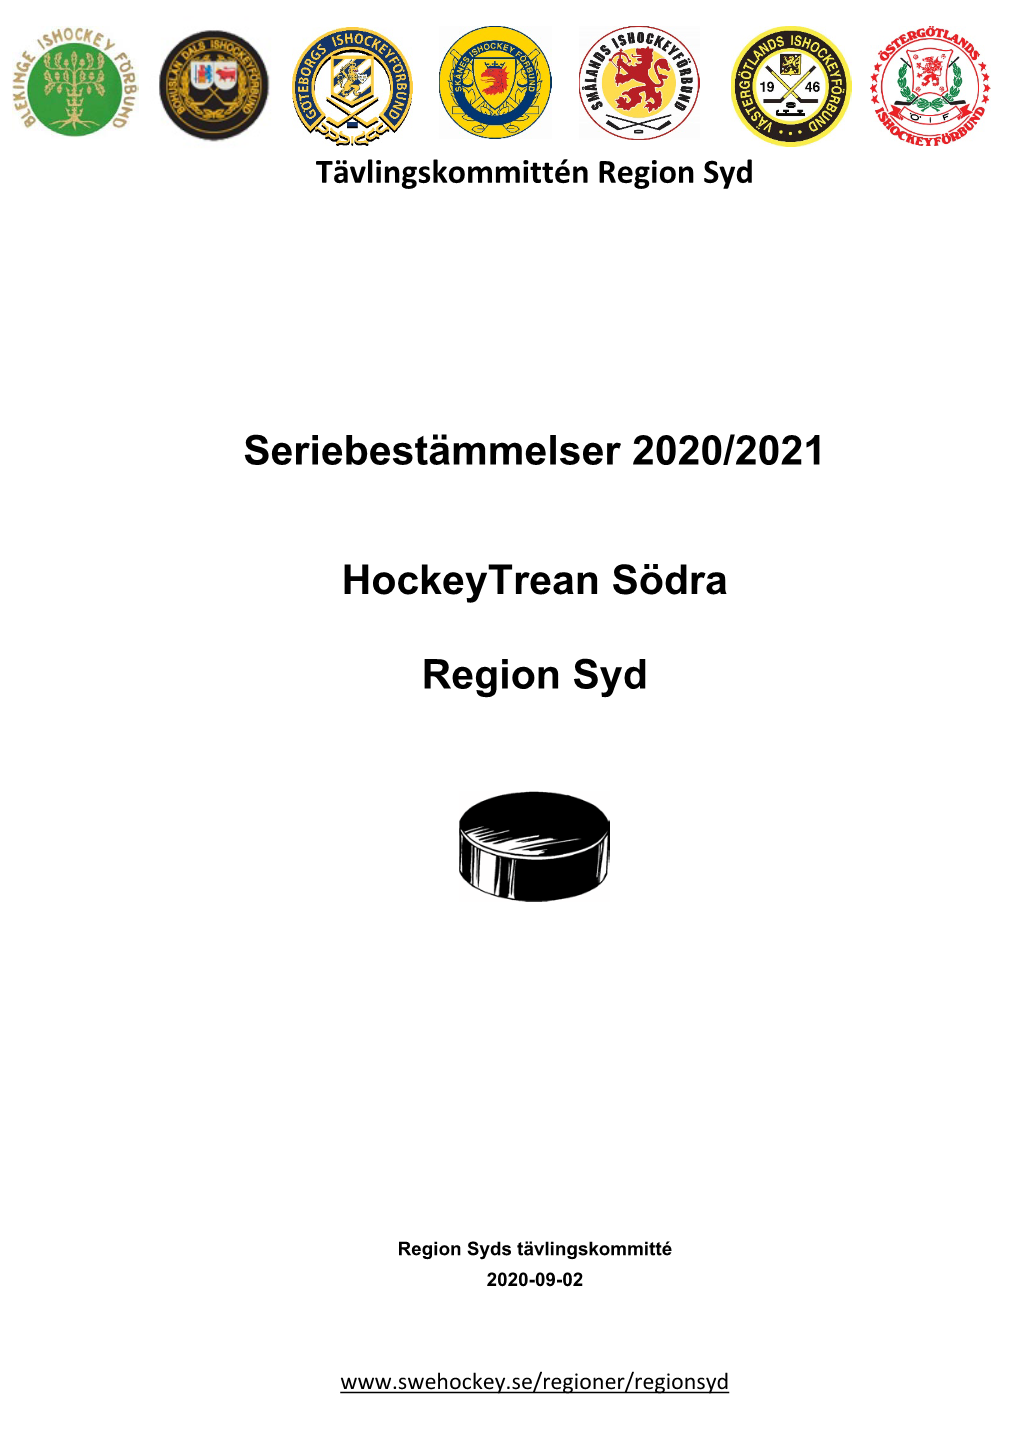 Seriebestämmelser 2020/2021 Hockeytrean Södra Region